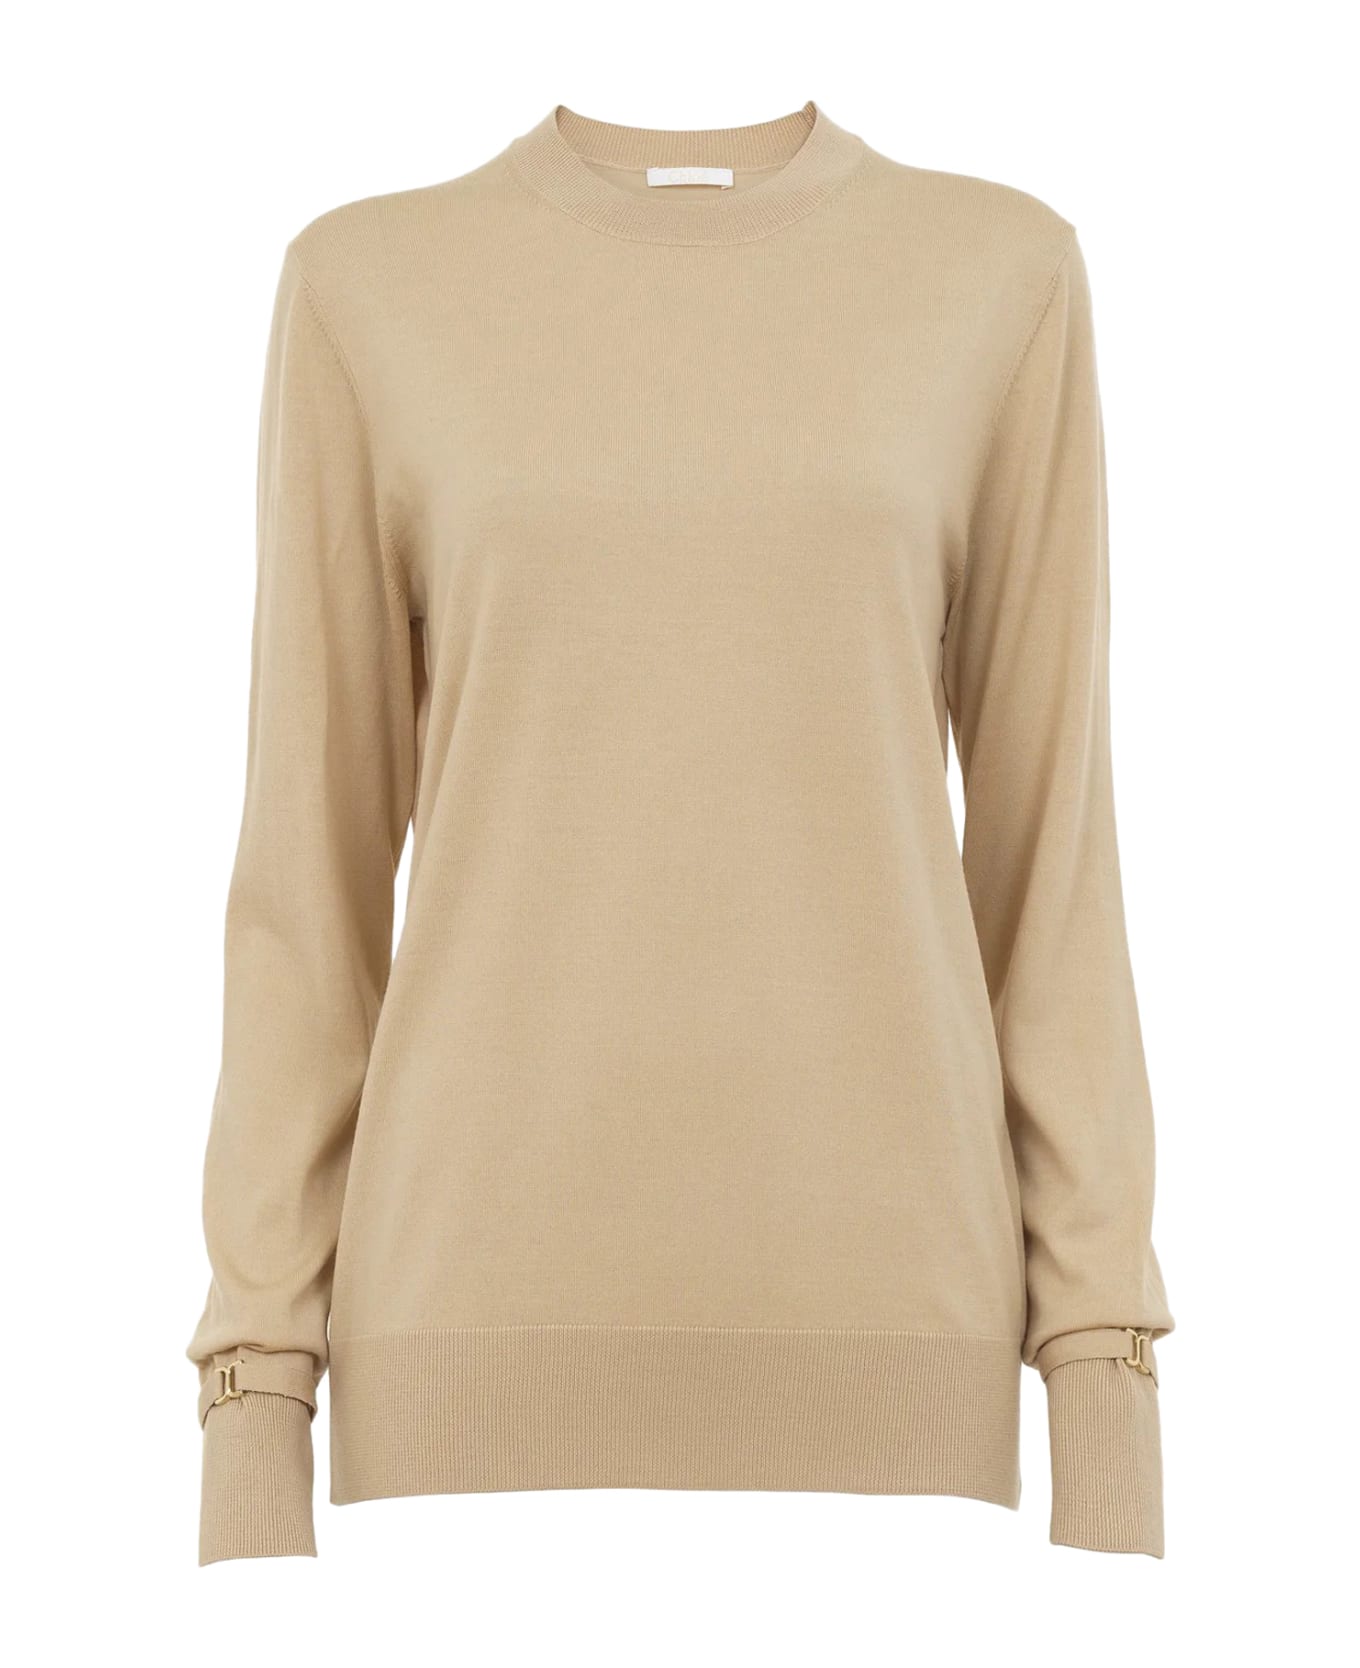 Chloé Long-sleeved Sweater - P Hot Sand ニットウェア